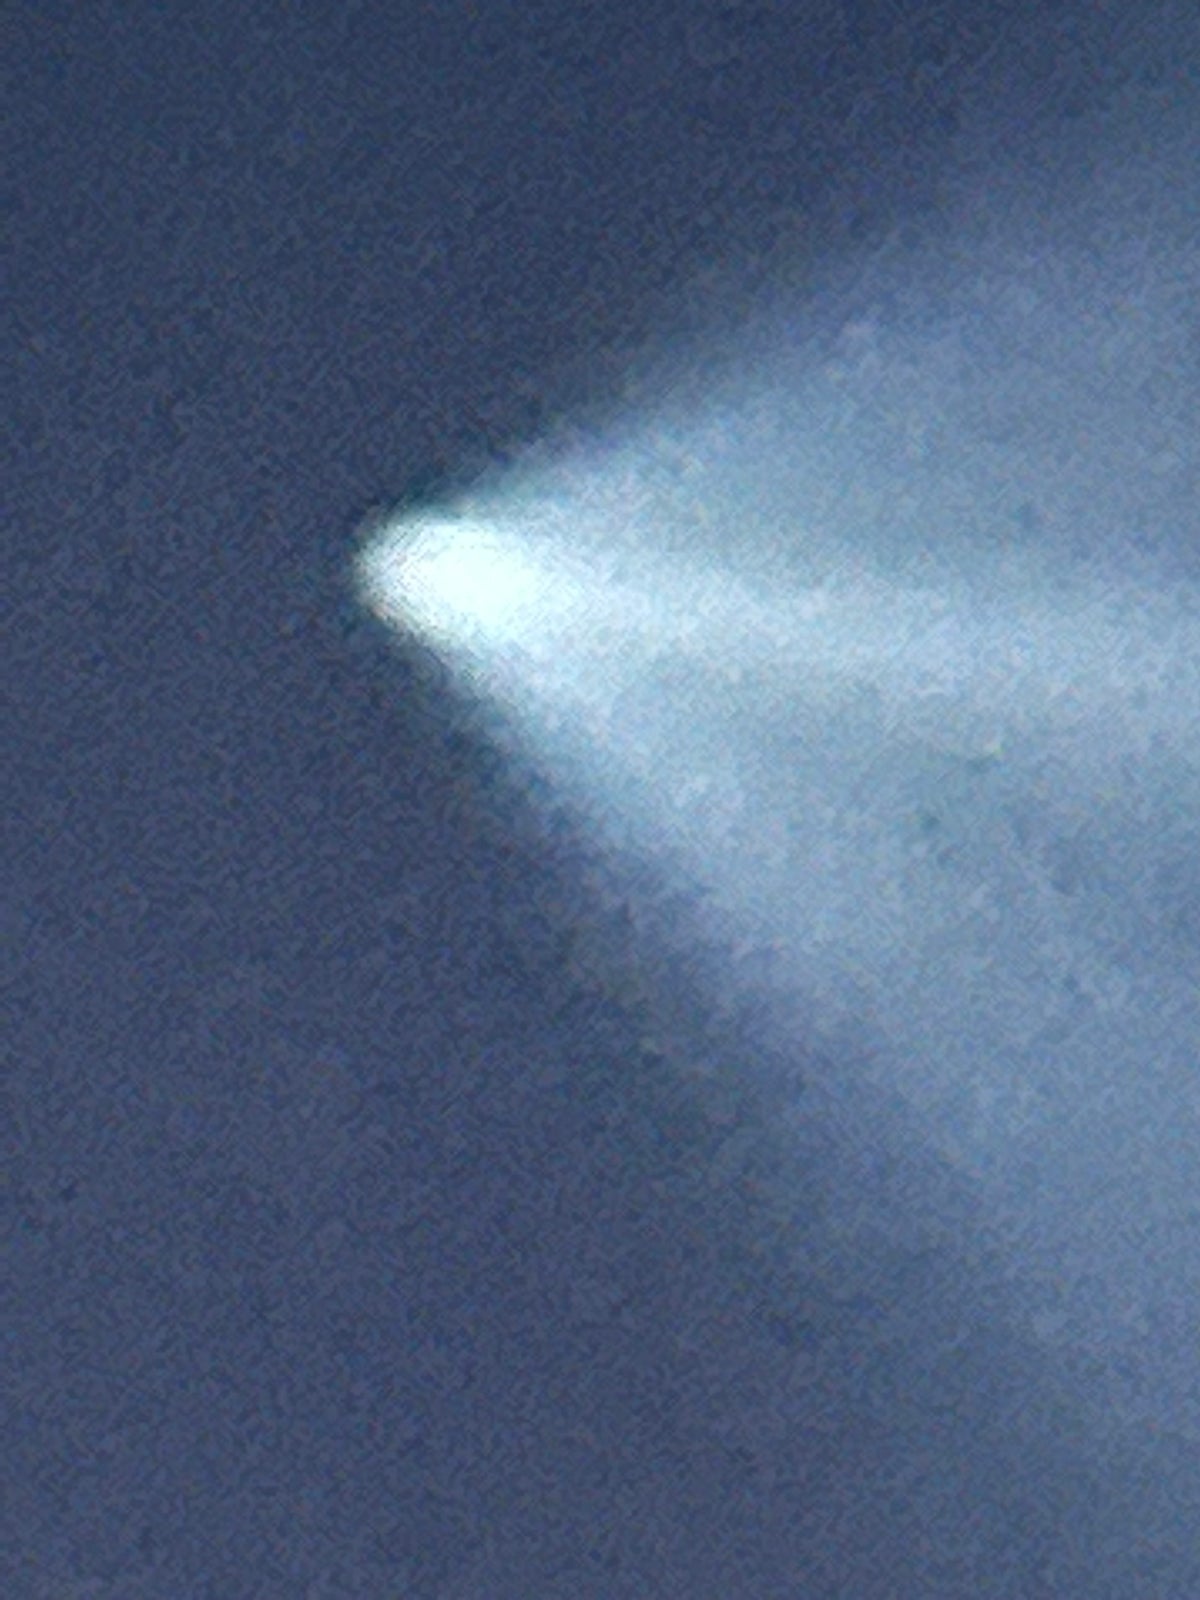 Urma de vapori a unei rachete SpaceX Falcon 9 peste Marlboro.  Fotografie oferită de Virginia Klein Viewer, News 12 New Jersey.